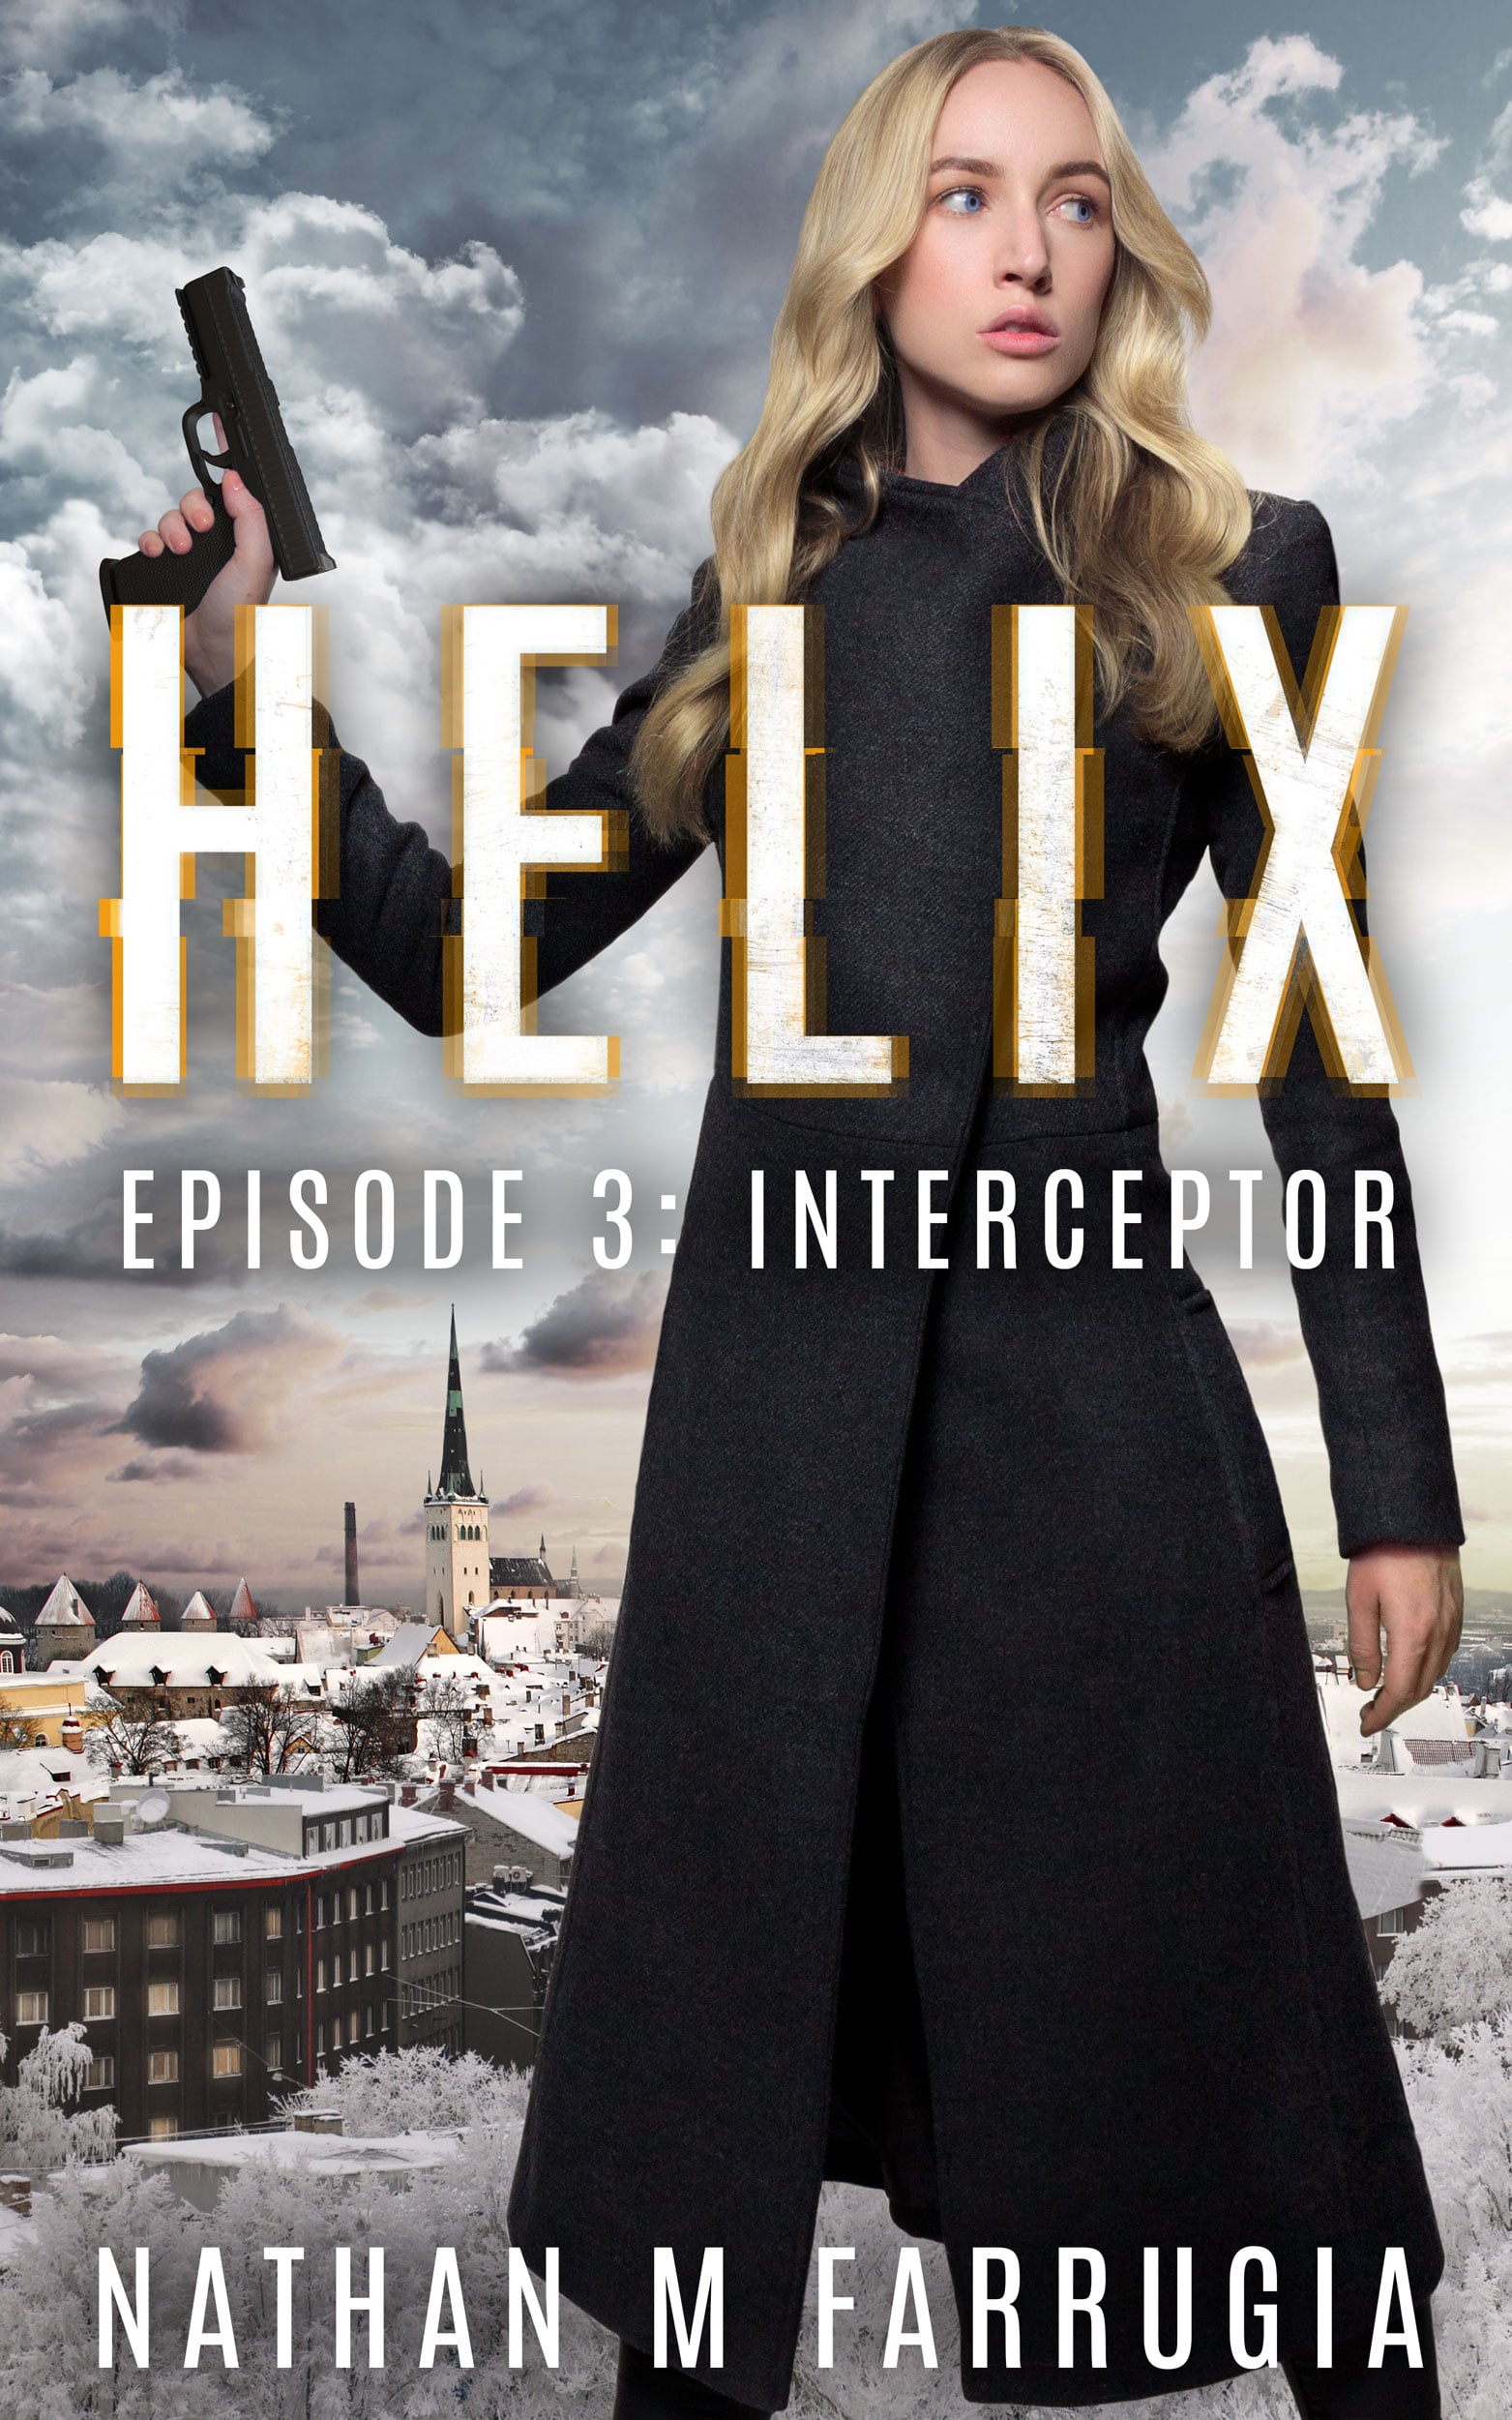 Helix, Episode 3